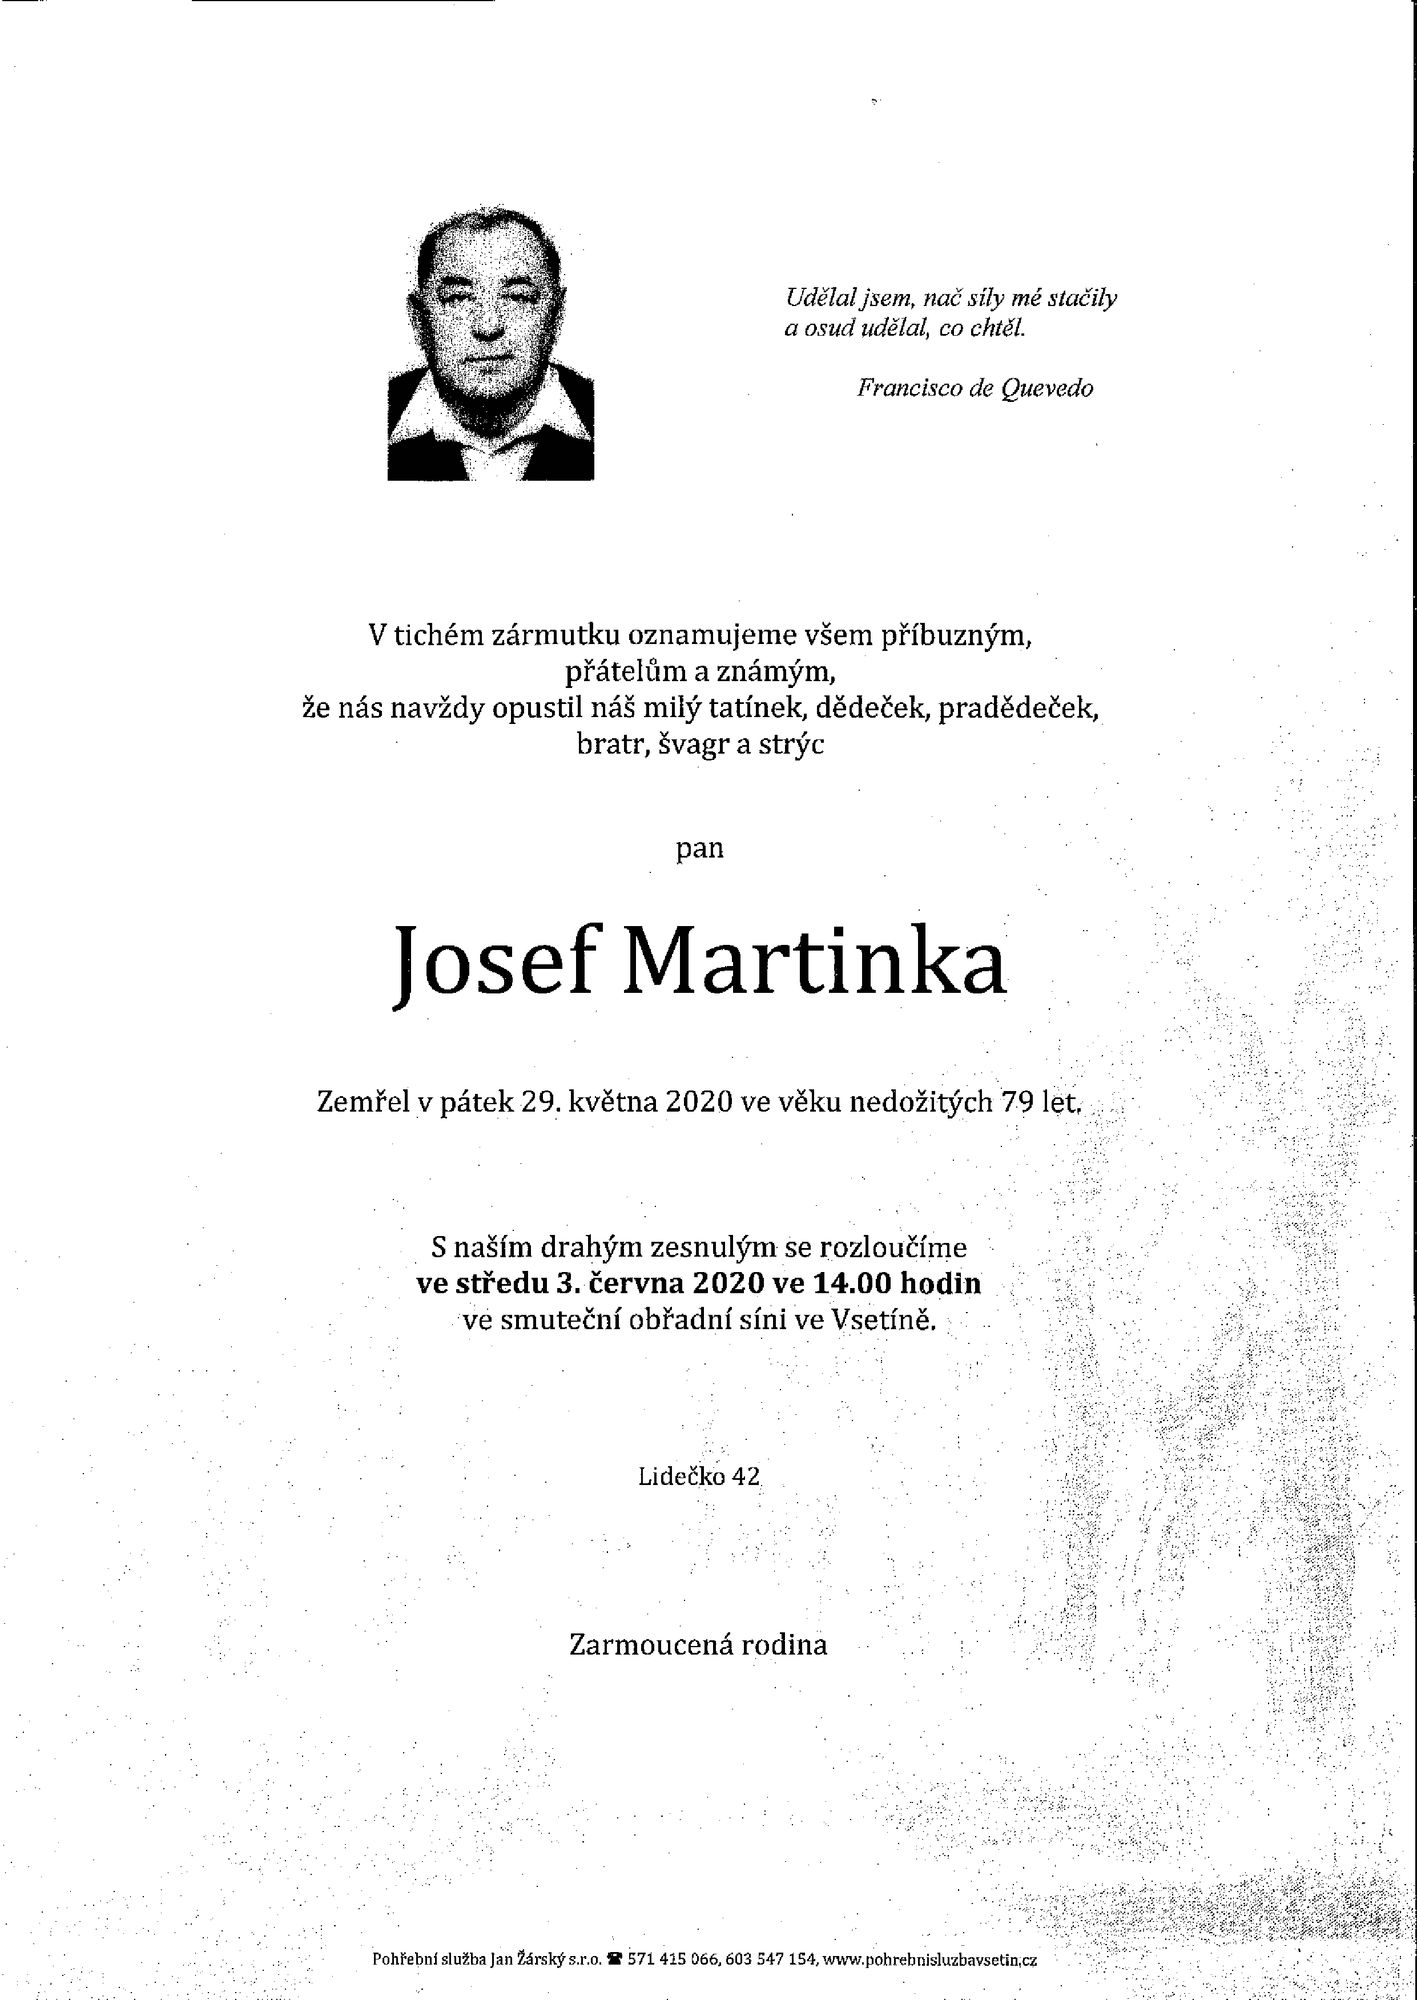 Josef Martinka